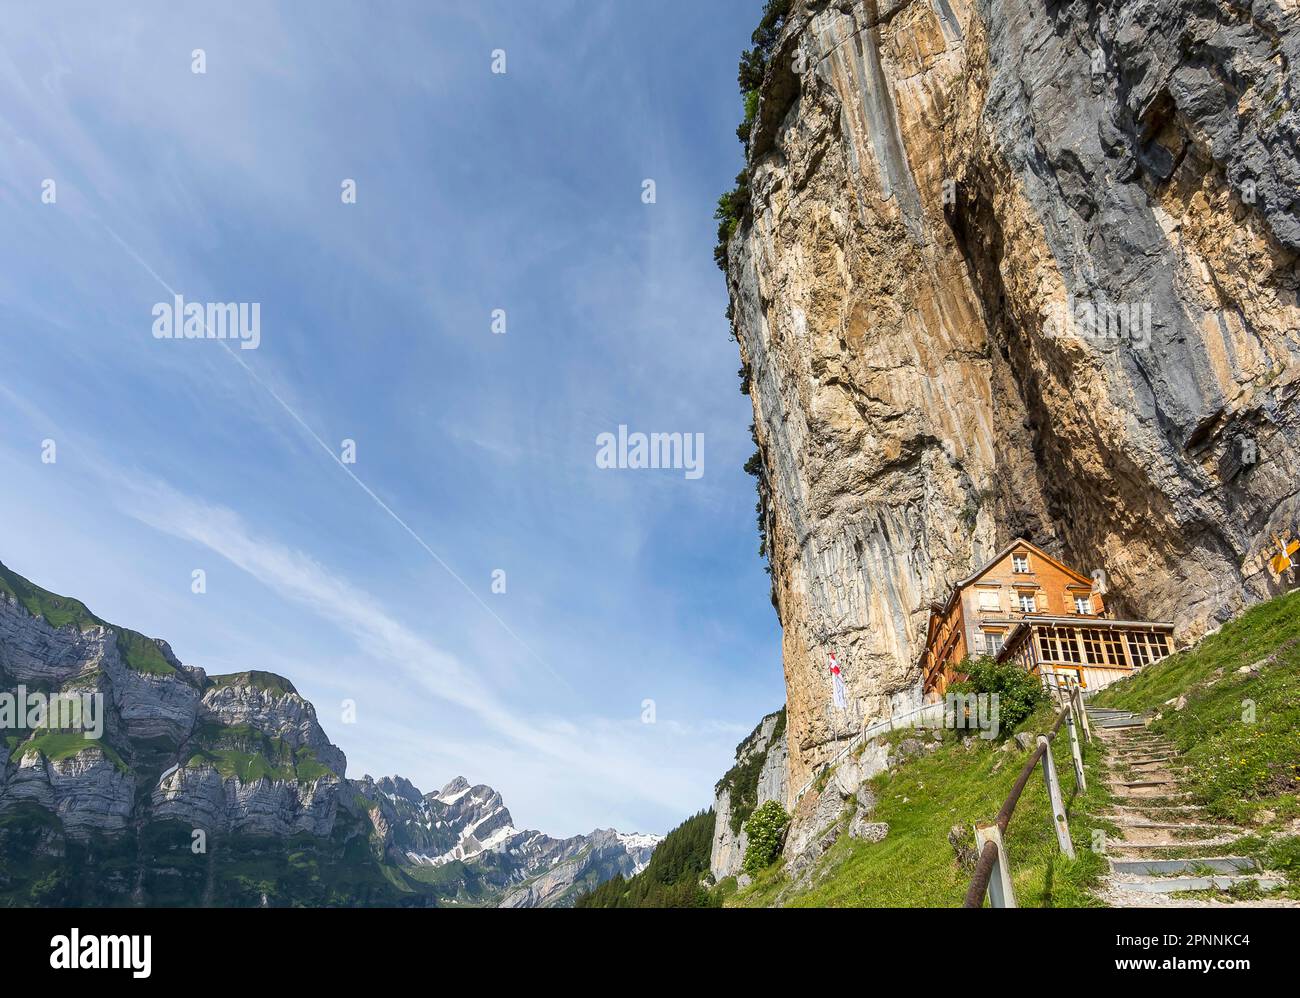 Aescher-Wildkirchli mountain inn, built into the rock below Ebenalp under a steep cliff. Weissbad, Canton Appenzell Innerrhoden, Switzerland Stock Photo